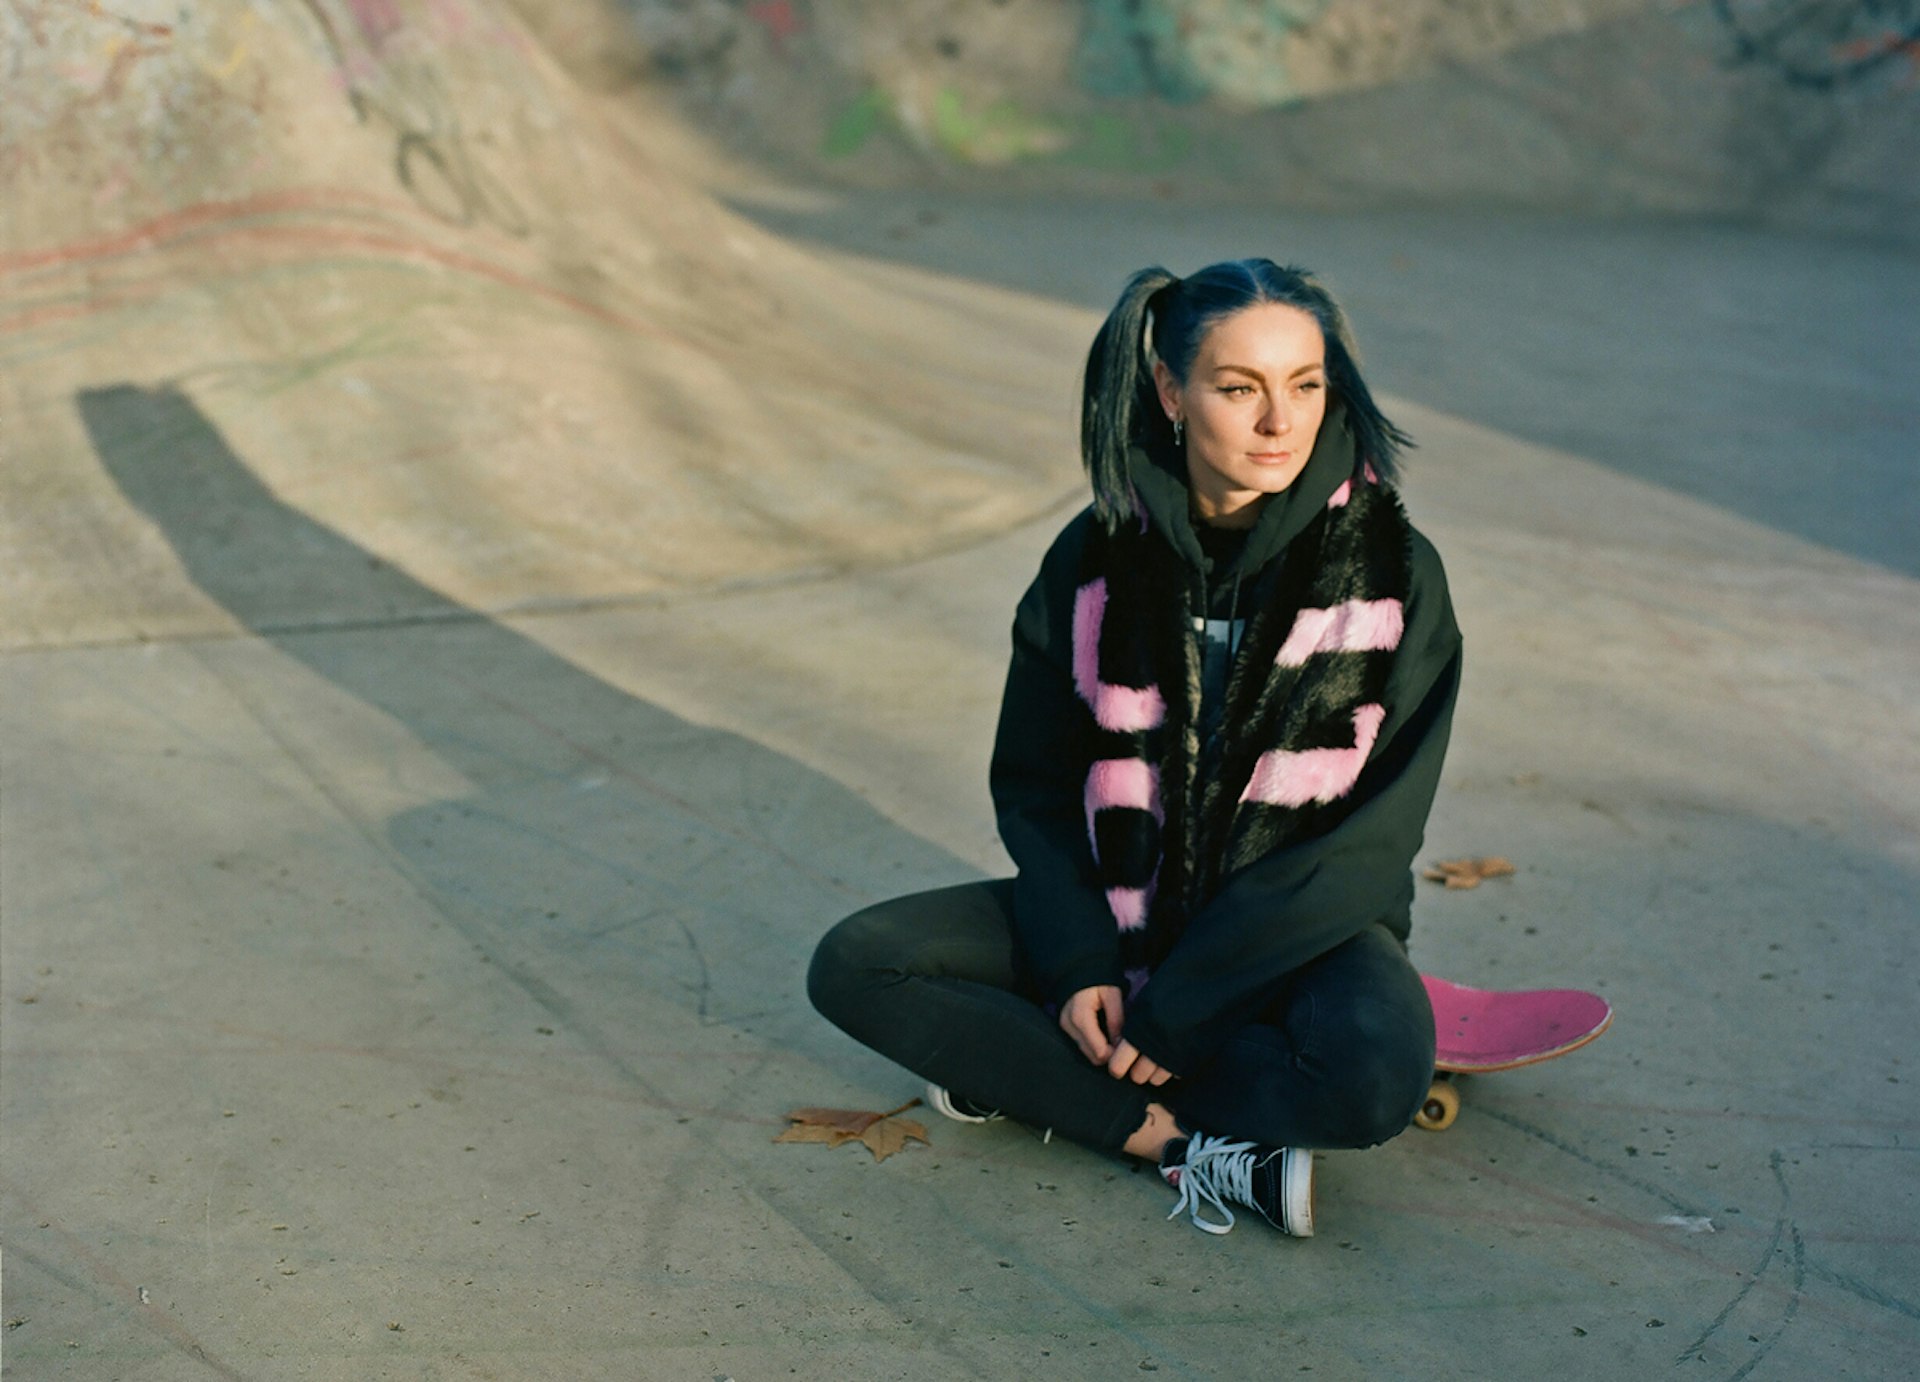 Stef Nurding is bridging skate's gender divide